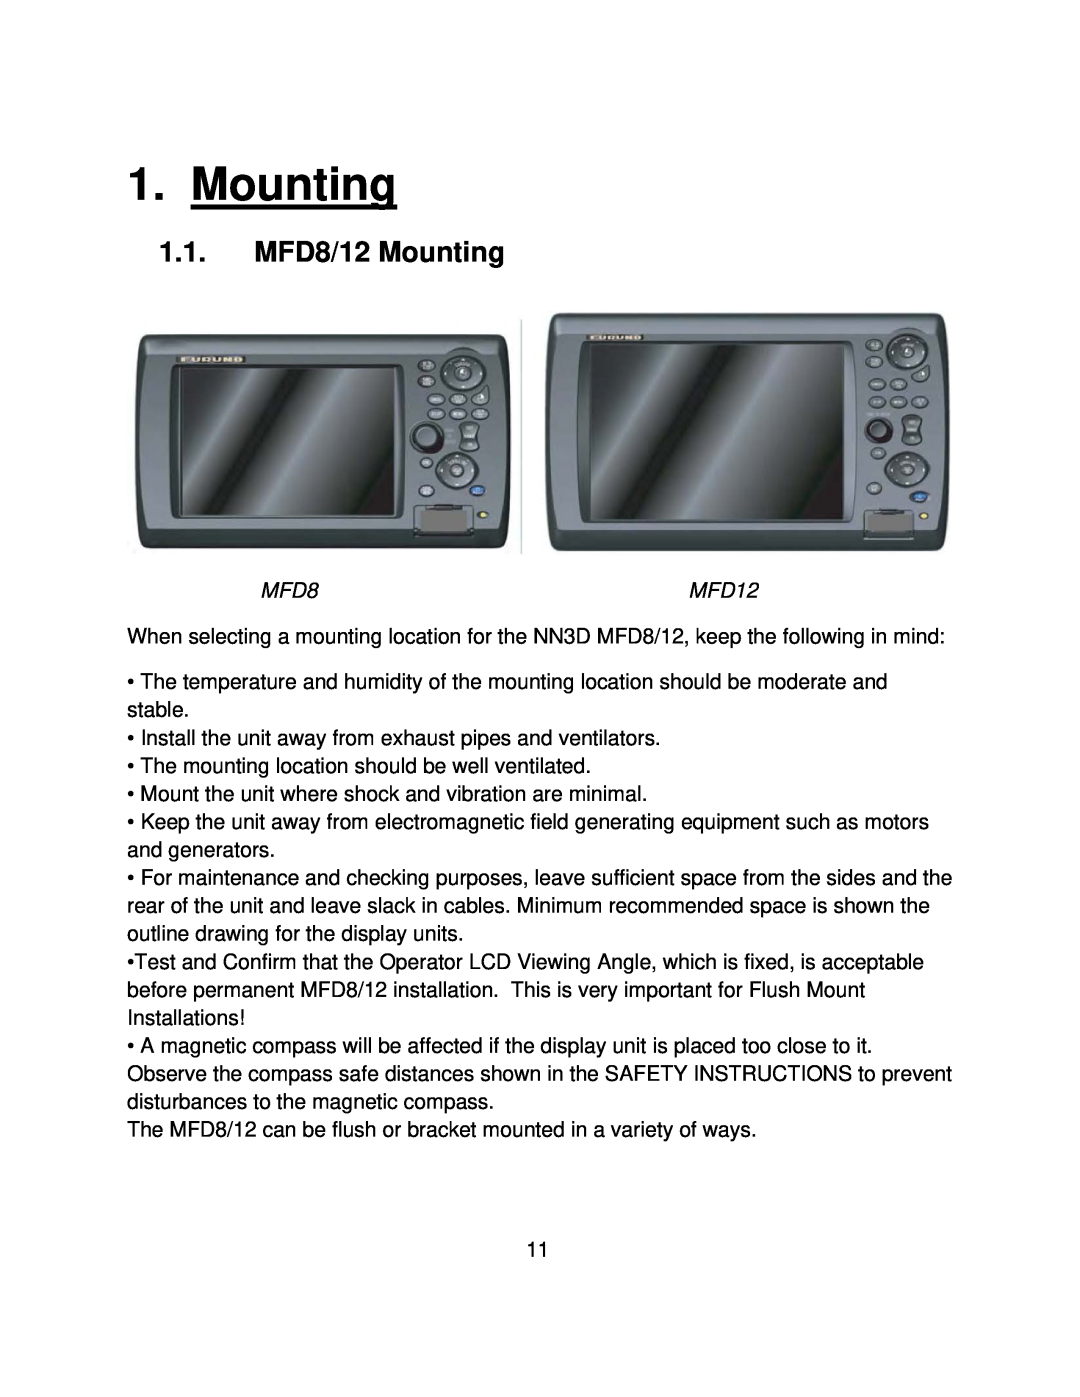 Furuno MFD8/12/BB manual 1.1.MFD8/12 Mounting 